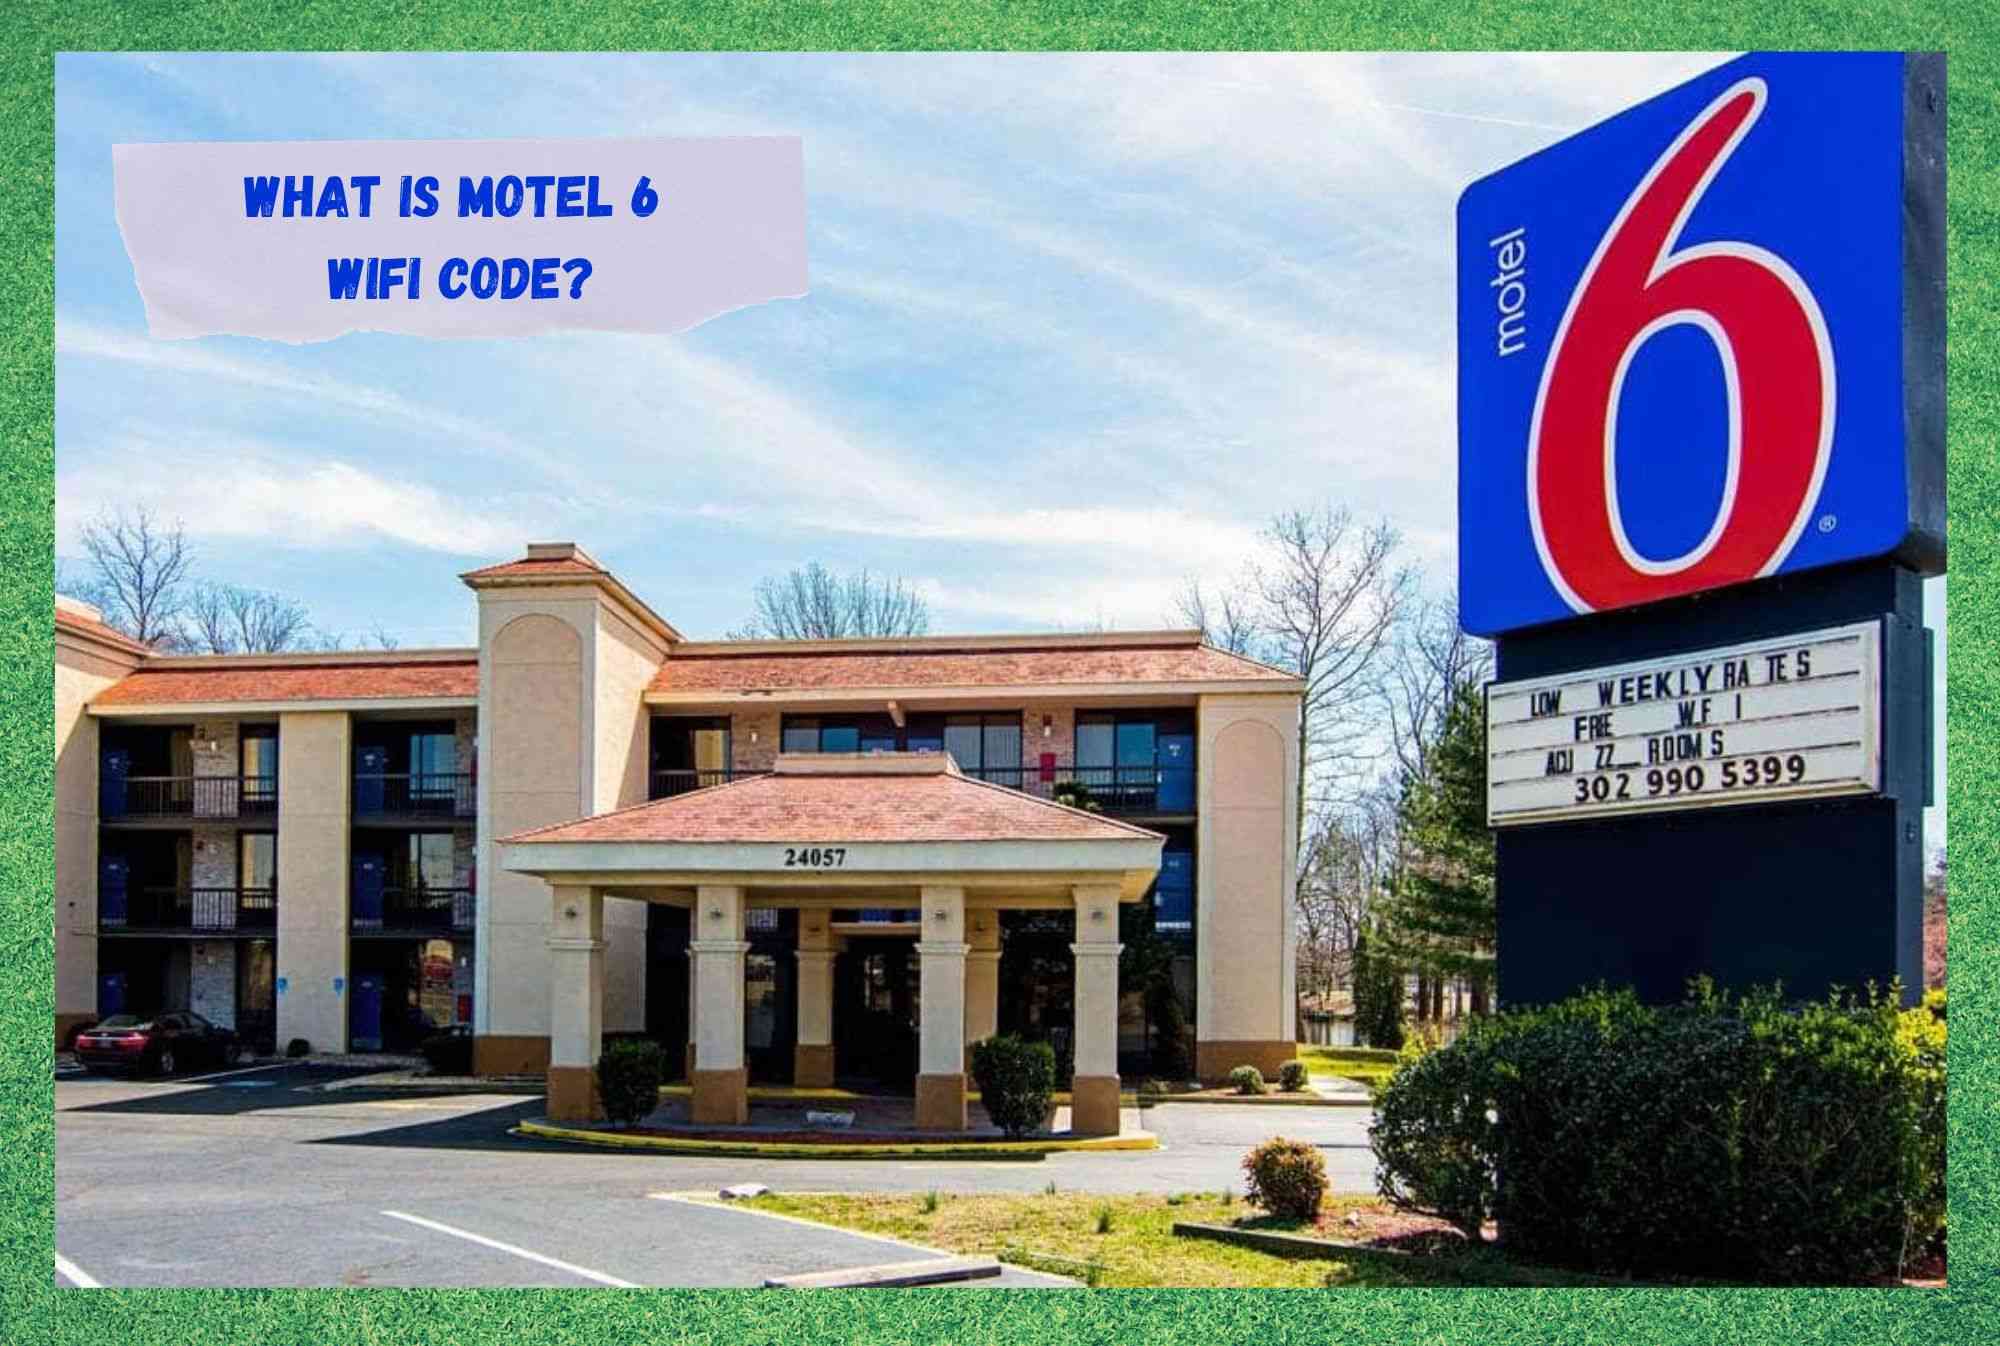 Wat is de Motel 6 WiFi code?